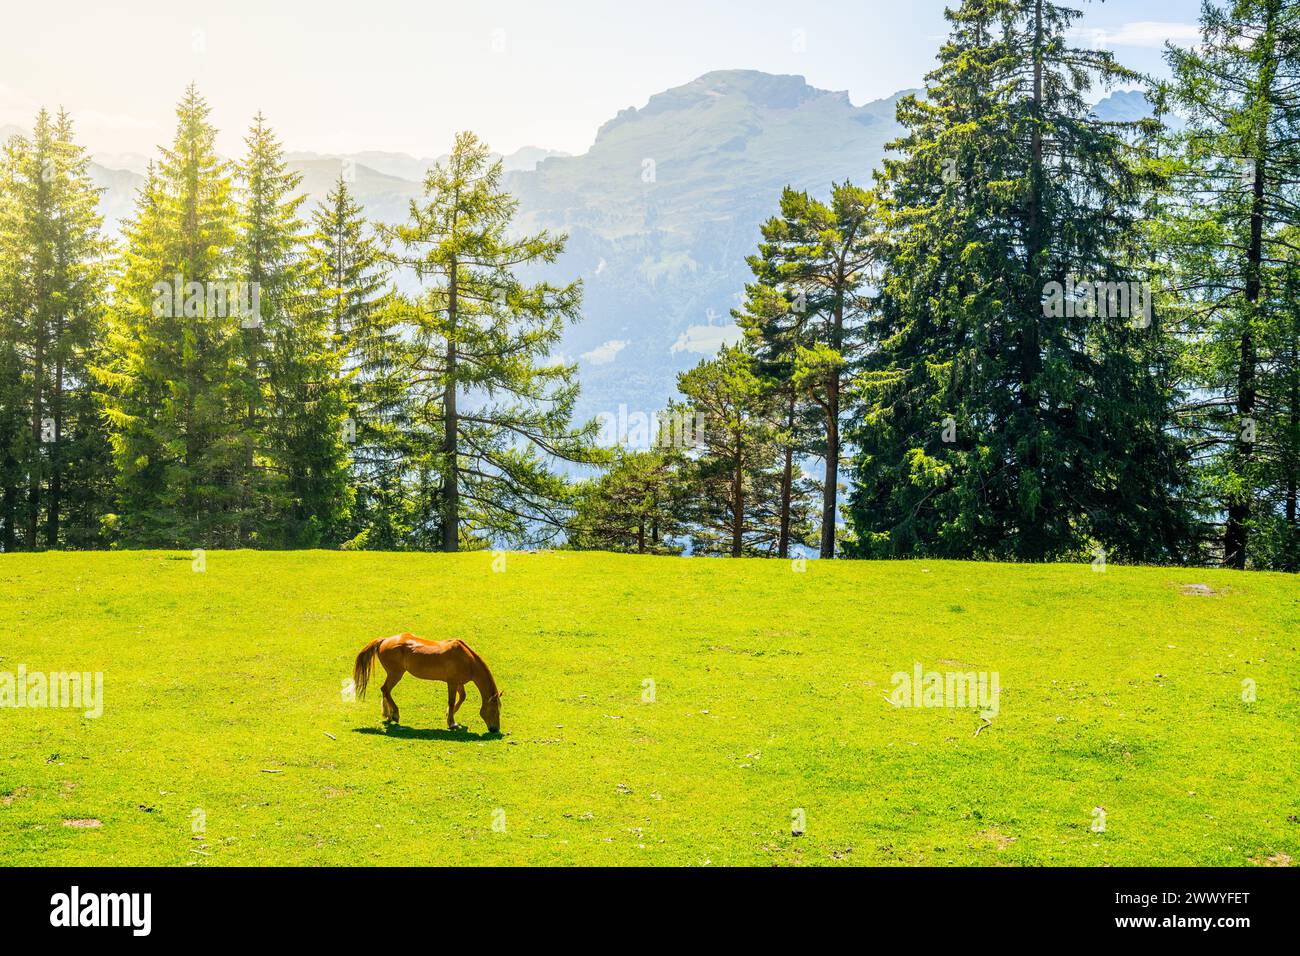 Ein einsames Pferd weidet auf einer grünen Wiese, eingebettet zwischen hoch aufragenden Kiefern, unter dem wachsamen Blick der majestätischen Alpen. Das warme Sonnenlicht taucht die ruhige Szene auf und unterstreicht die natürliche Schönheit dieser idyllischen Landschaft Stockfoto